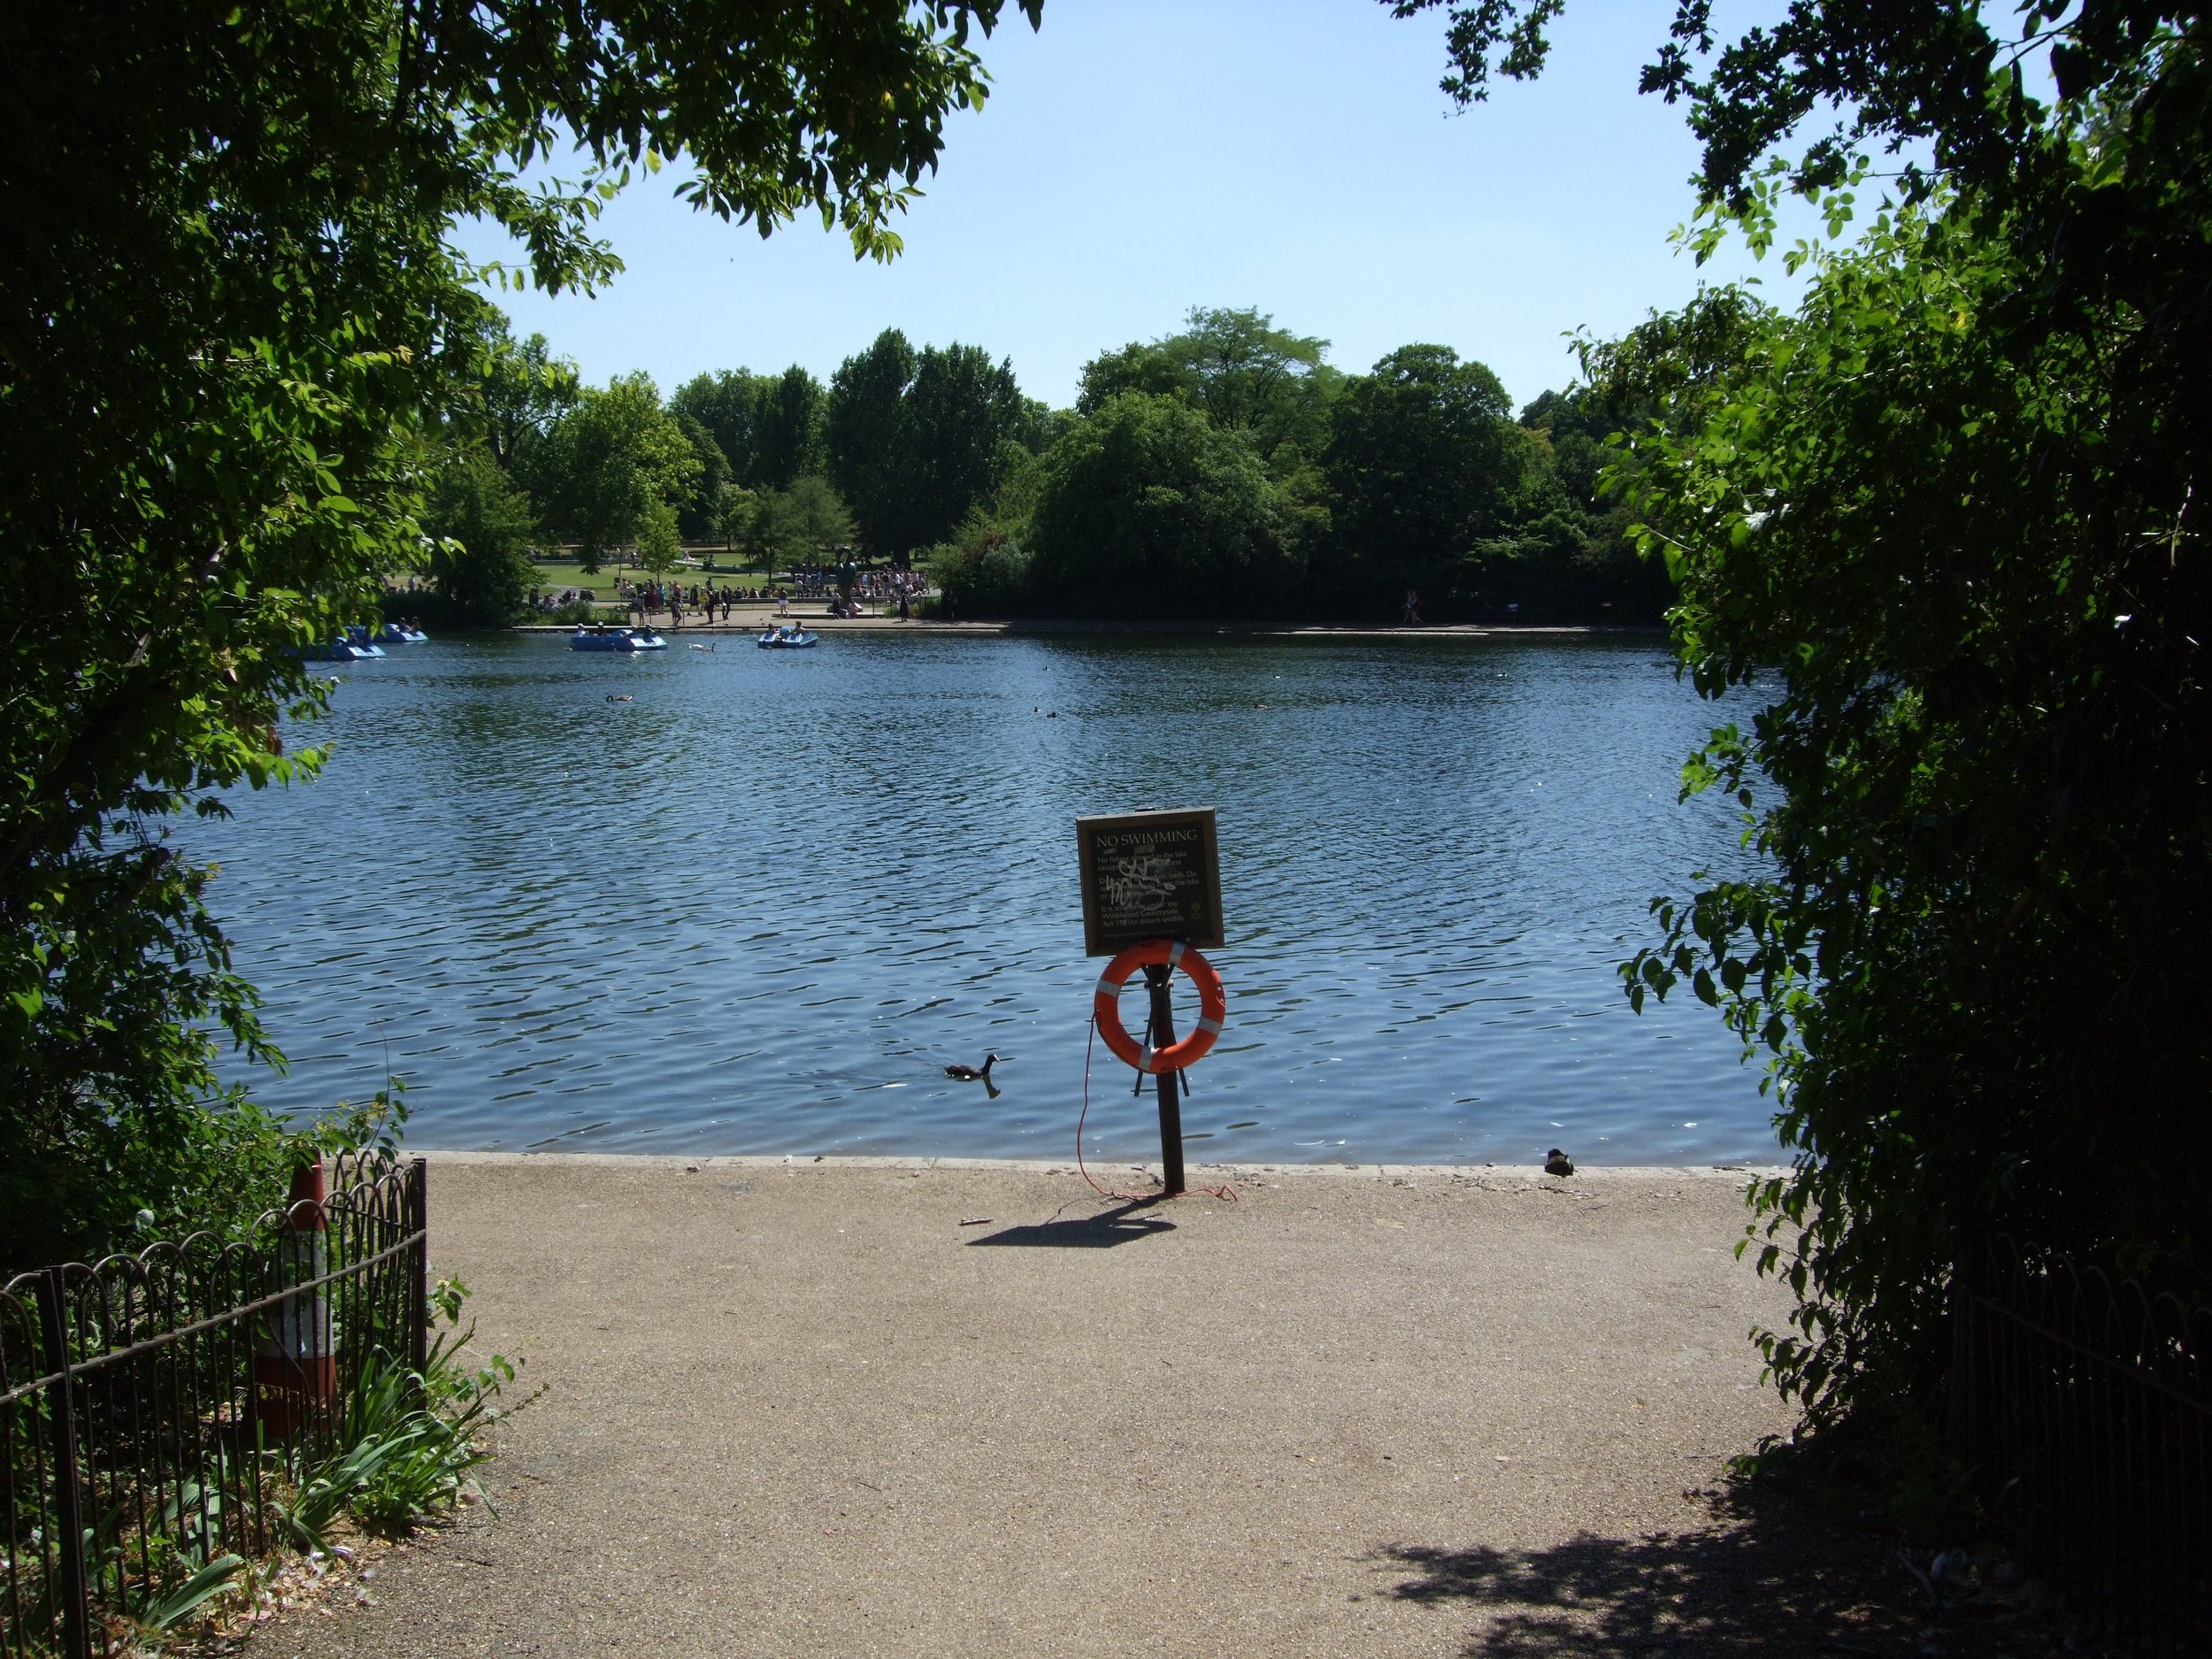  Hyde Park, London, June 2018 